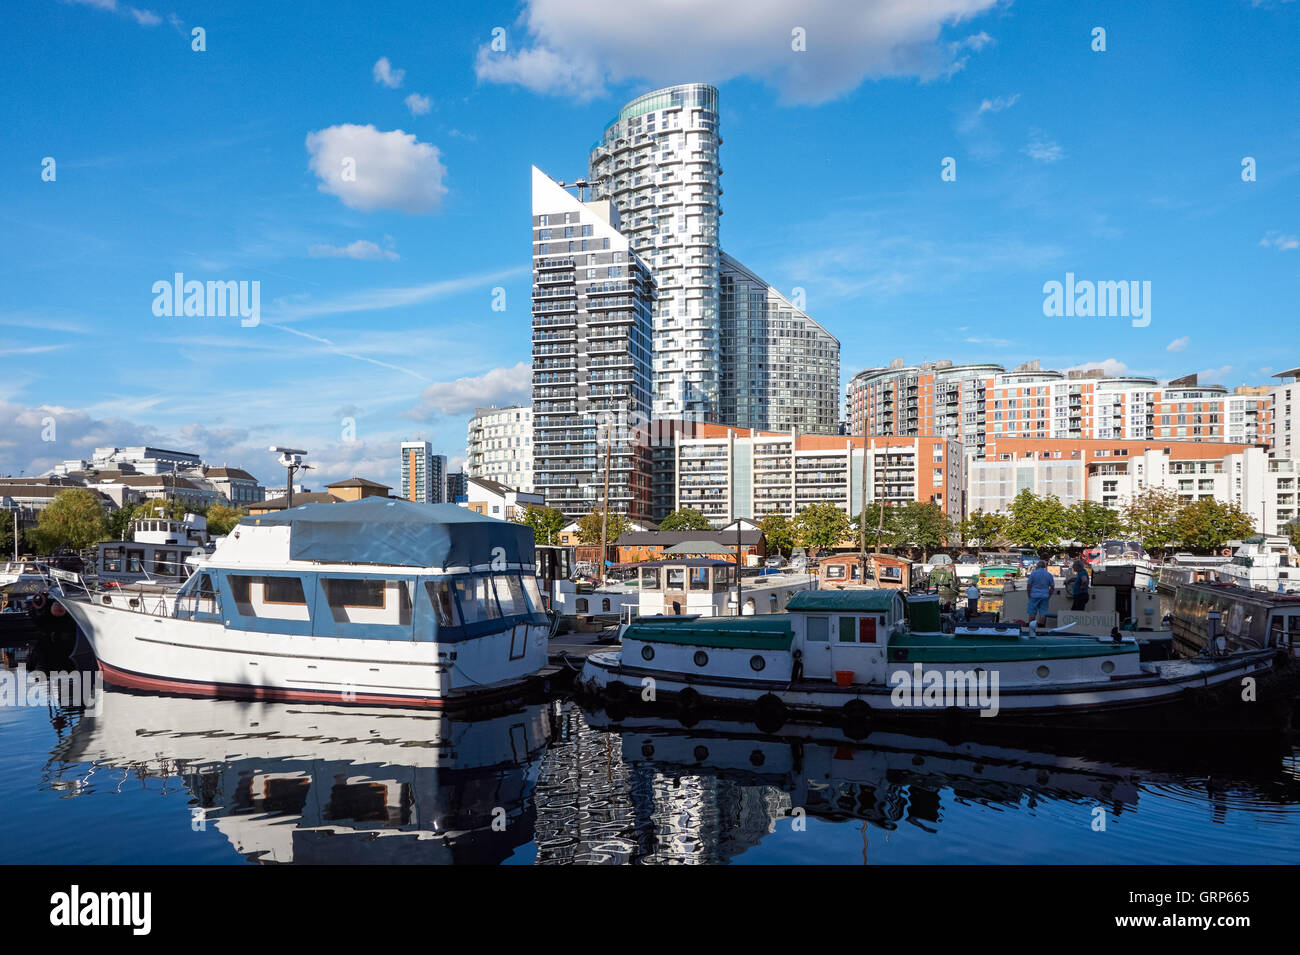 Pappel Dock Marina mit modernem Luxus Wohnungen in London England Vereinigtes Königreich UK Stockfoto